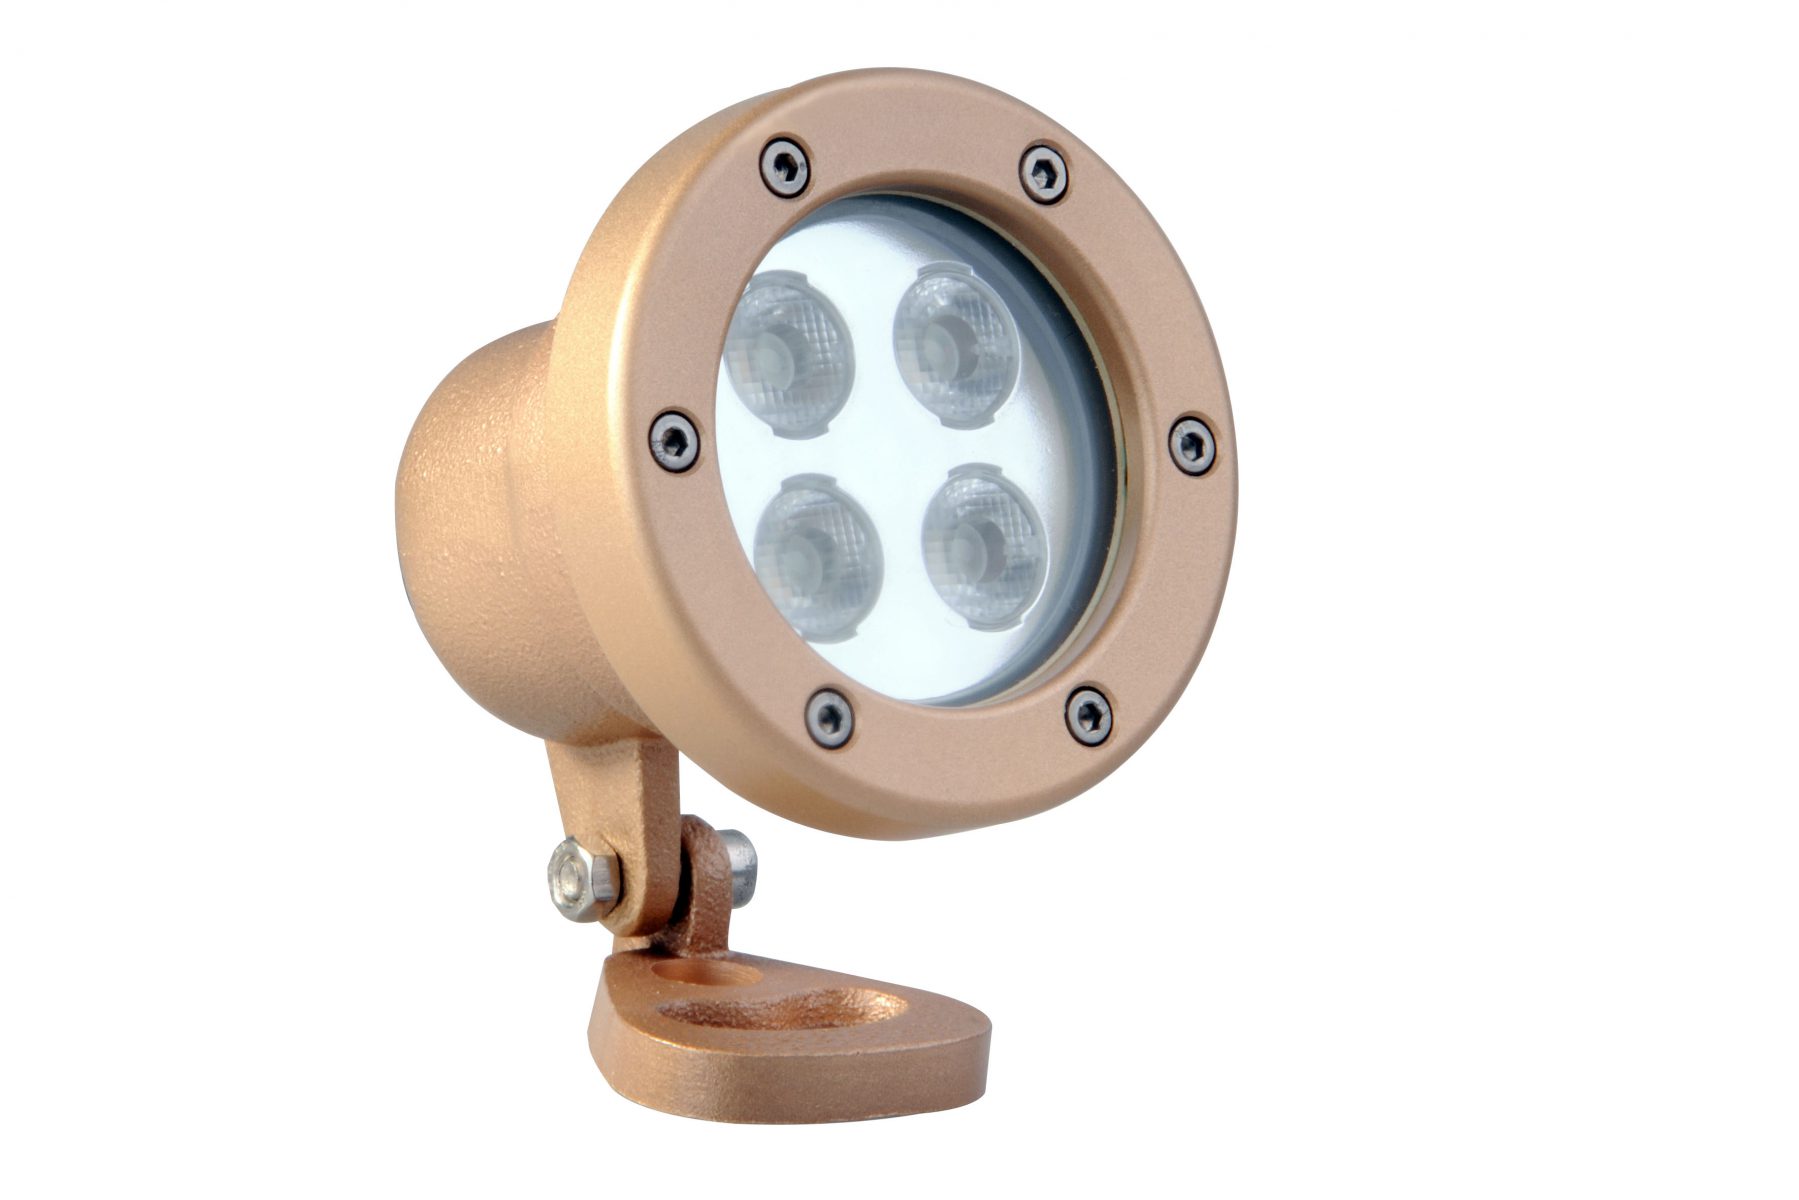 Светодиодный прожектор Power-LED для подсветки фонтанов, 4 X 3 Вт, цвет RGB, степень защиты IP68